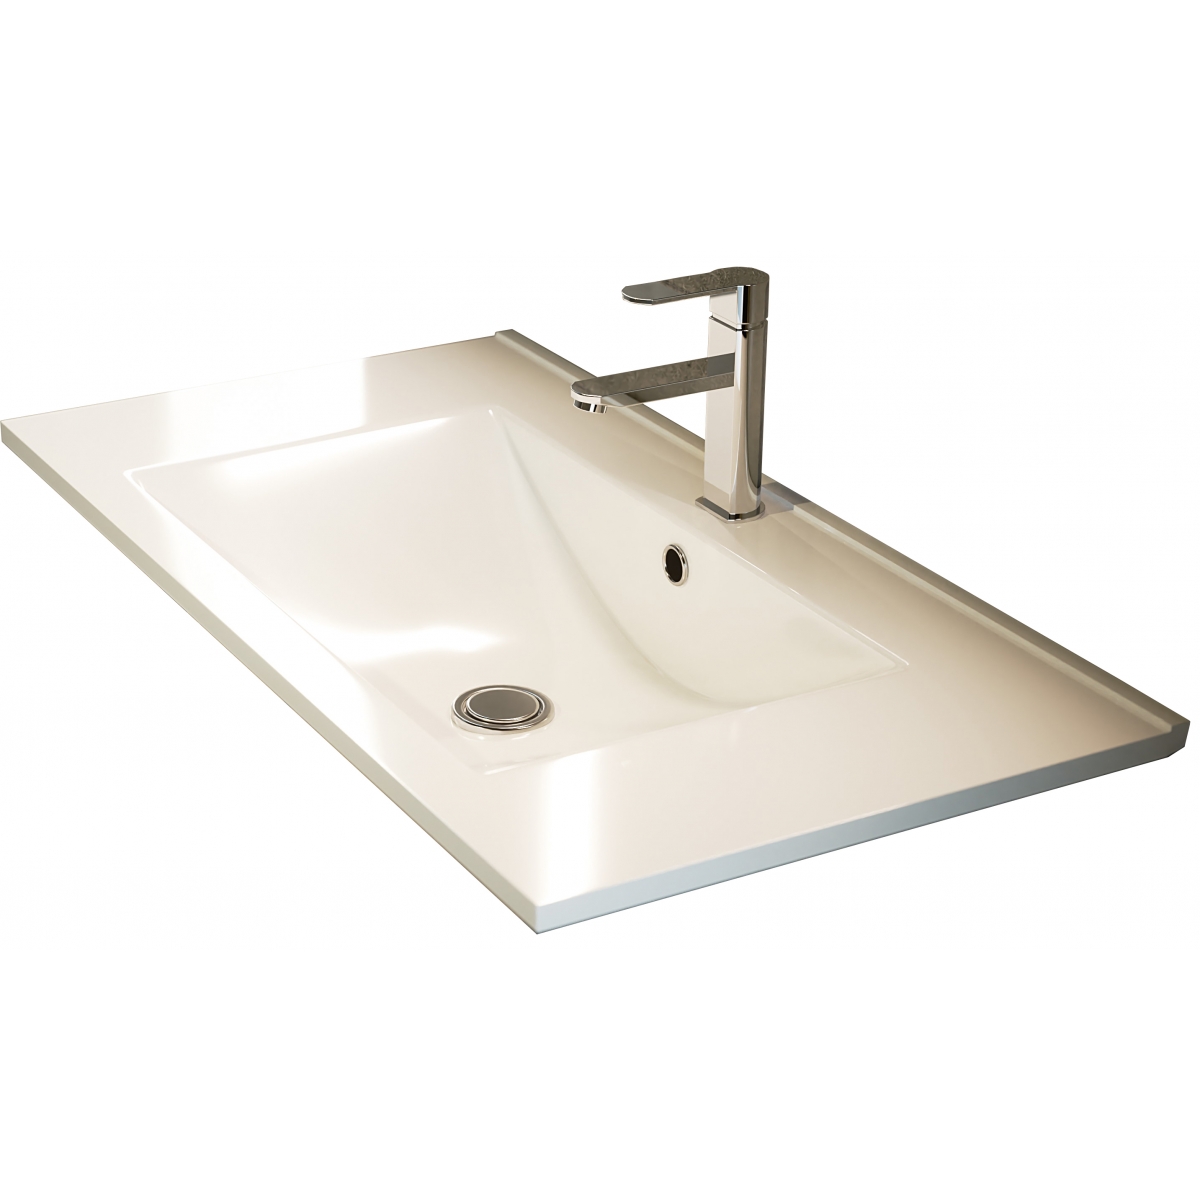 Detalle de Mueble de baño suspendido Mayorca de 100 cm de ancho color Britannia con lavabo integrado